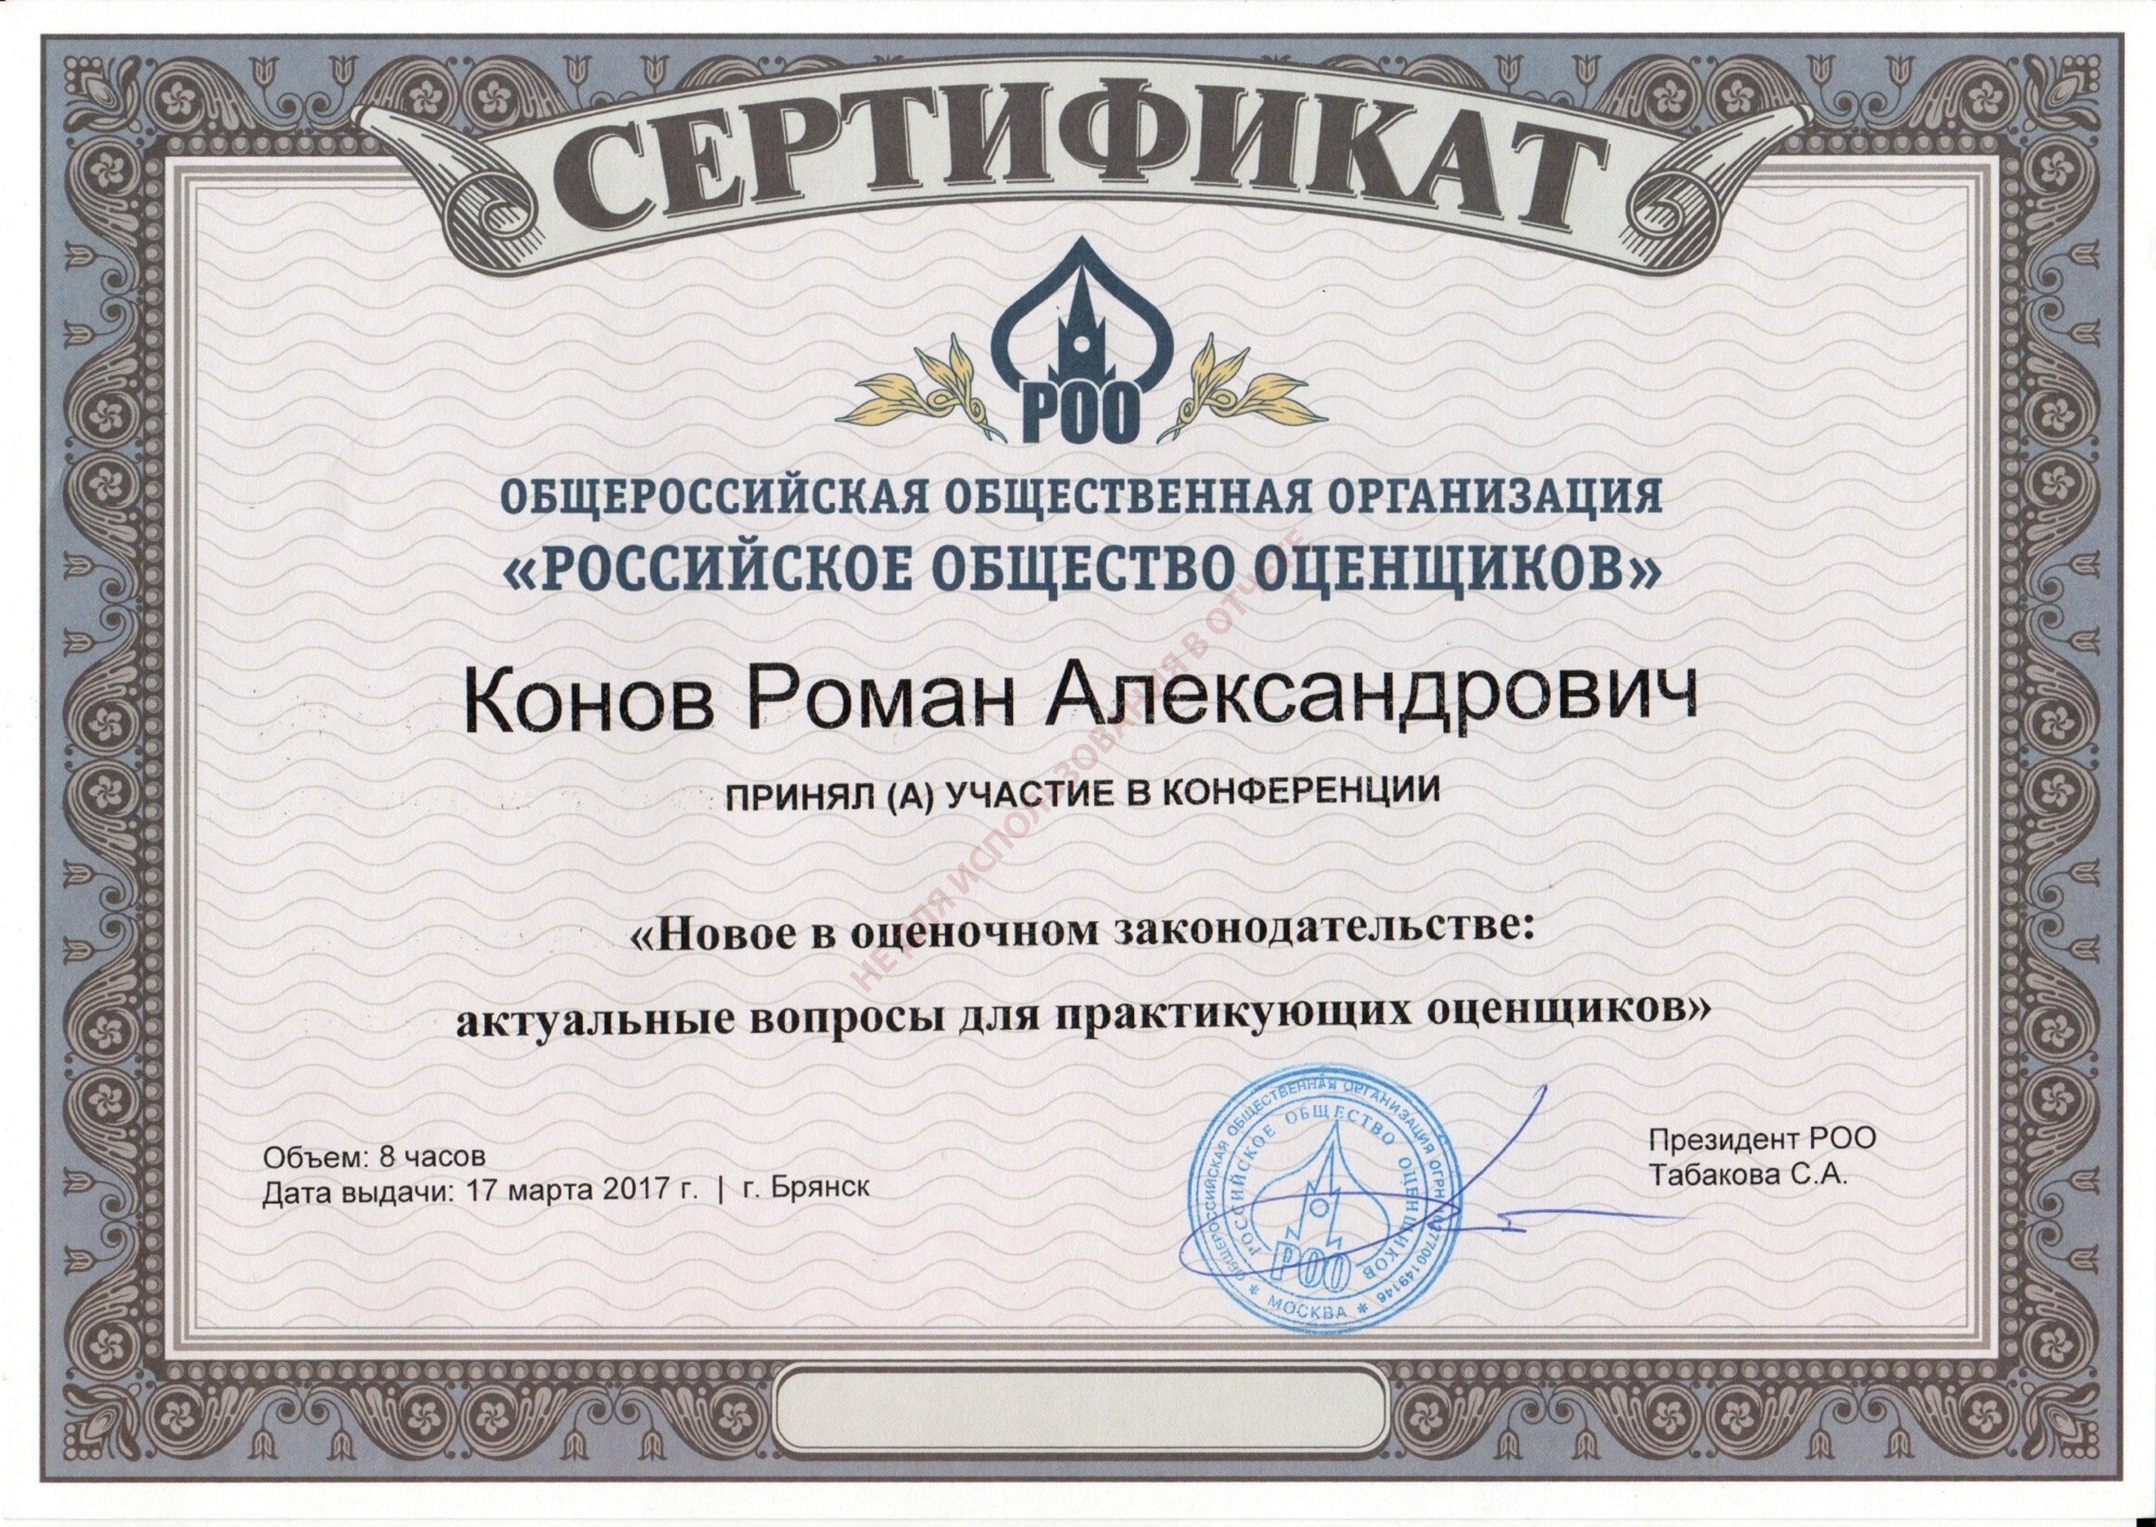 Сертификат. Новое в оценочном законодательстве